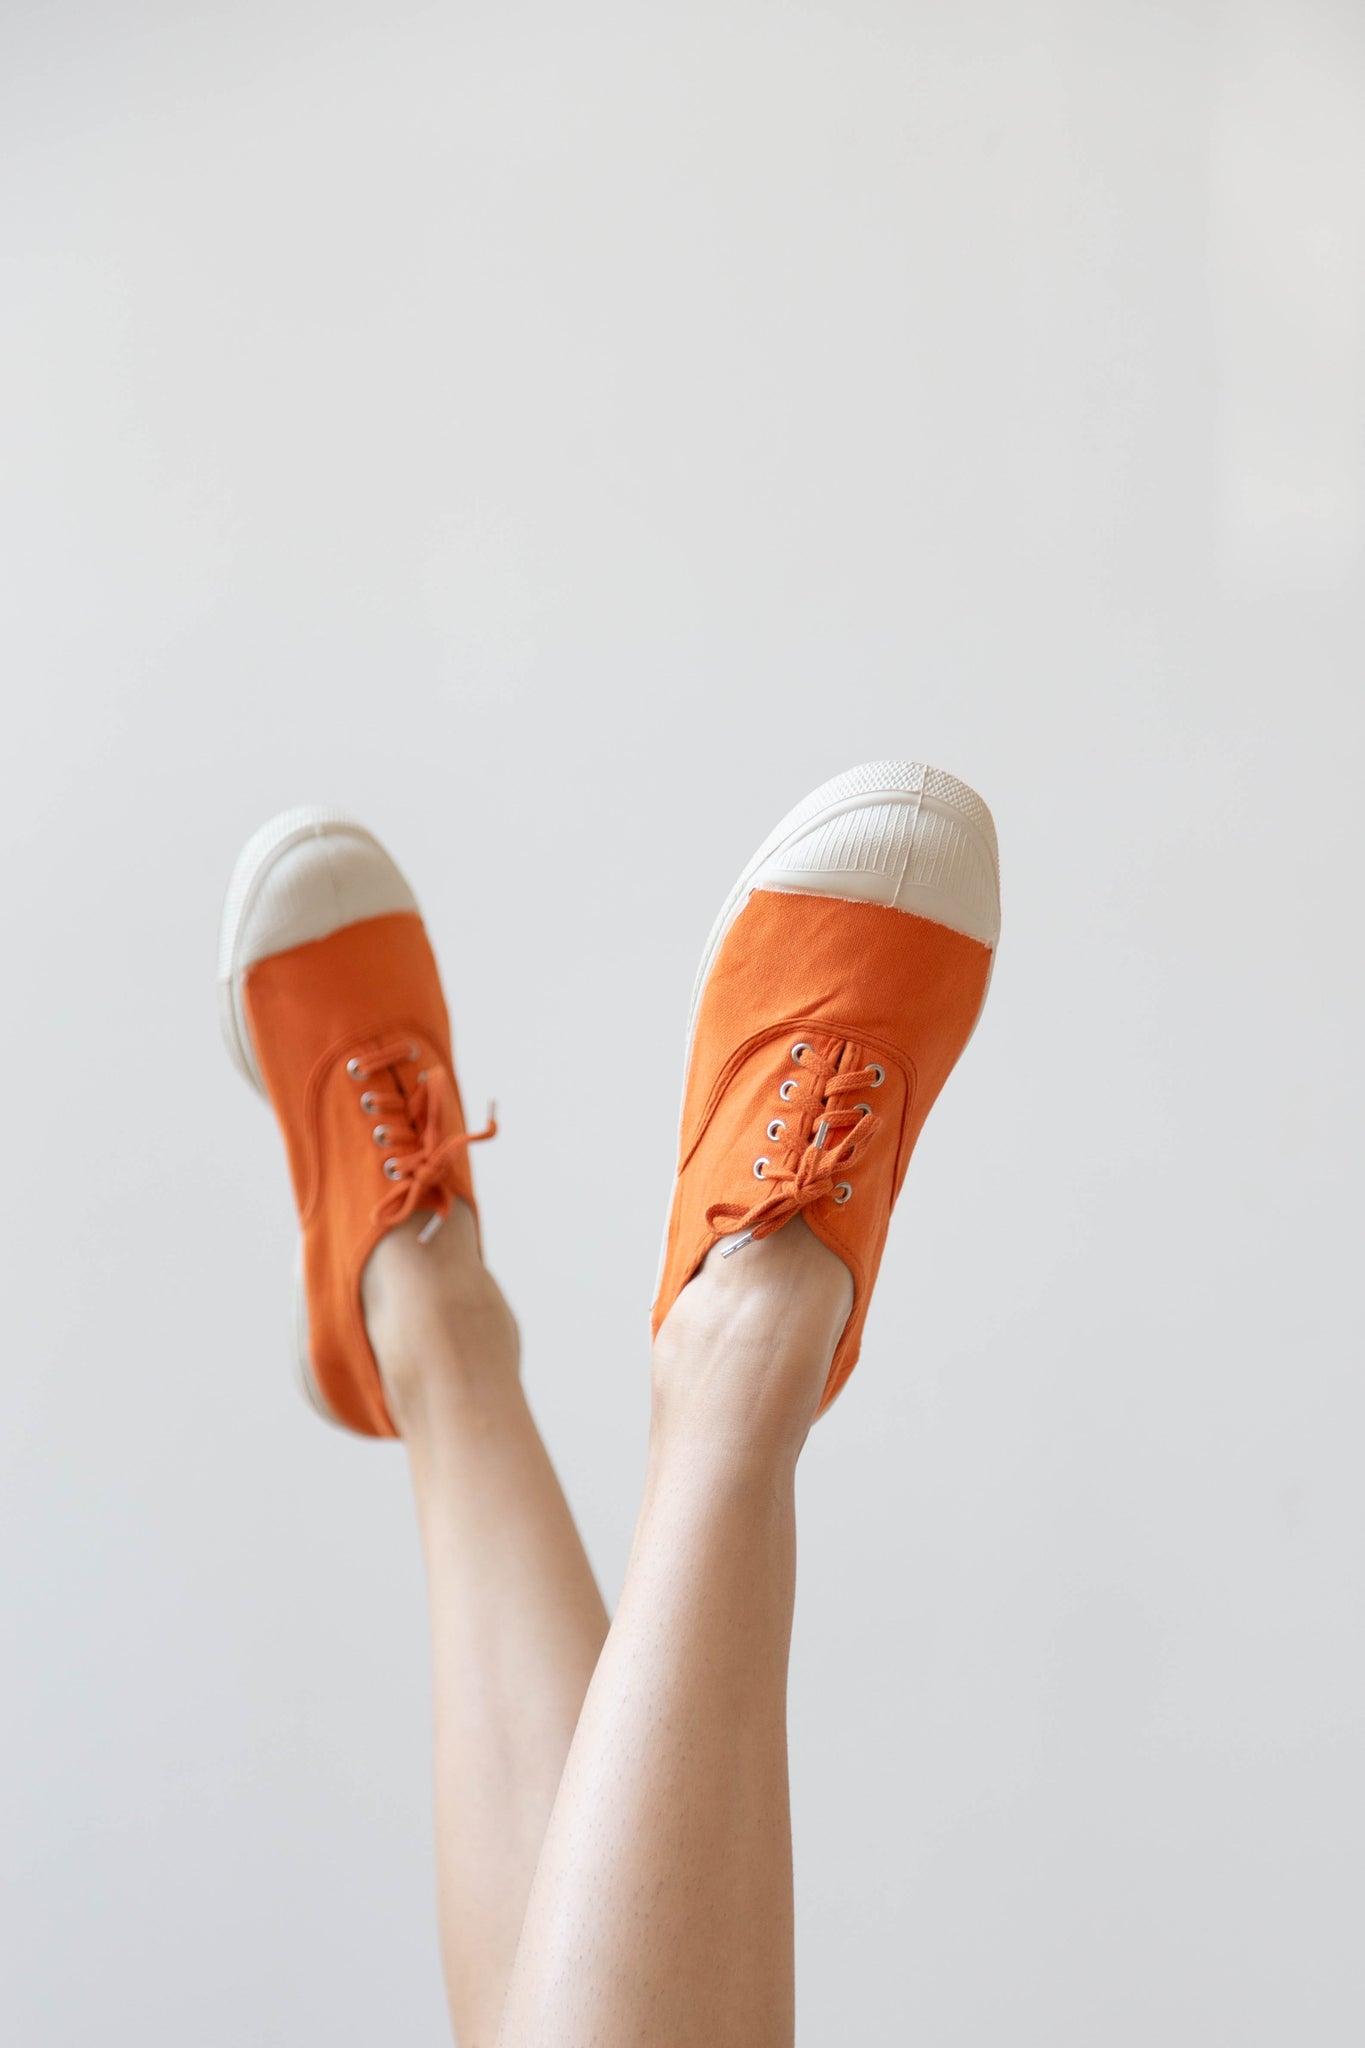 Neem de telefoon op Afwezigheid De kamer schoonmaken rennes — Lace-Up Sneakers in Marmalade